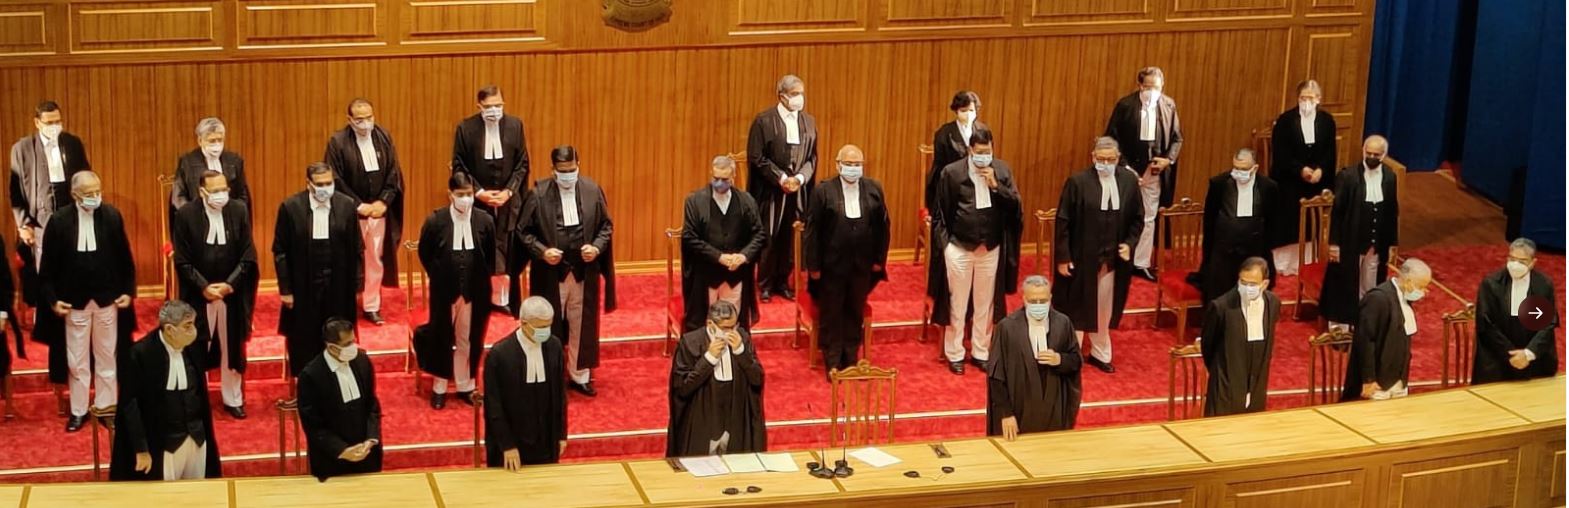 31 अगस्त को सुप्रीम कोर्ट के 9 न्यायाधीशों ने ली थी शपथ